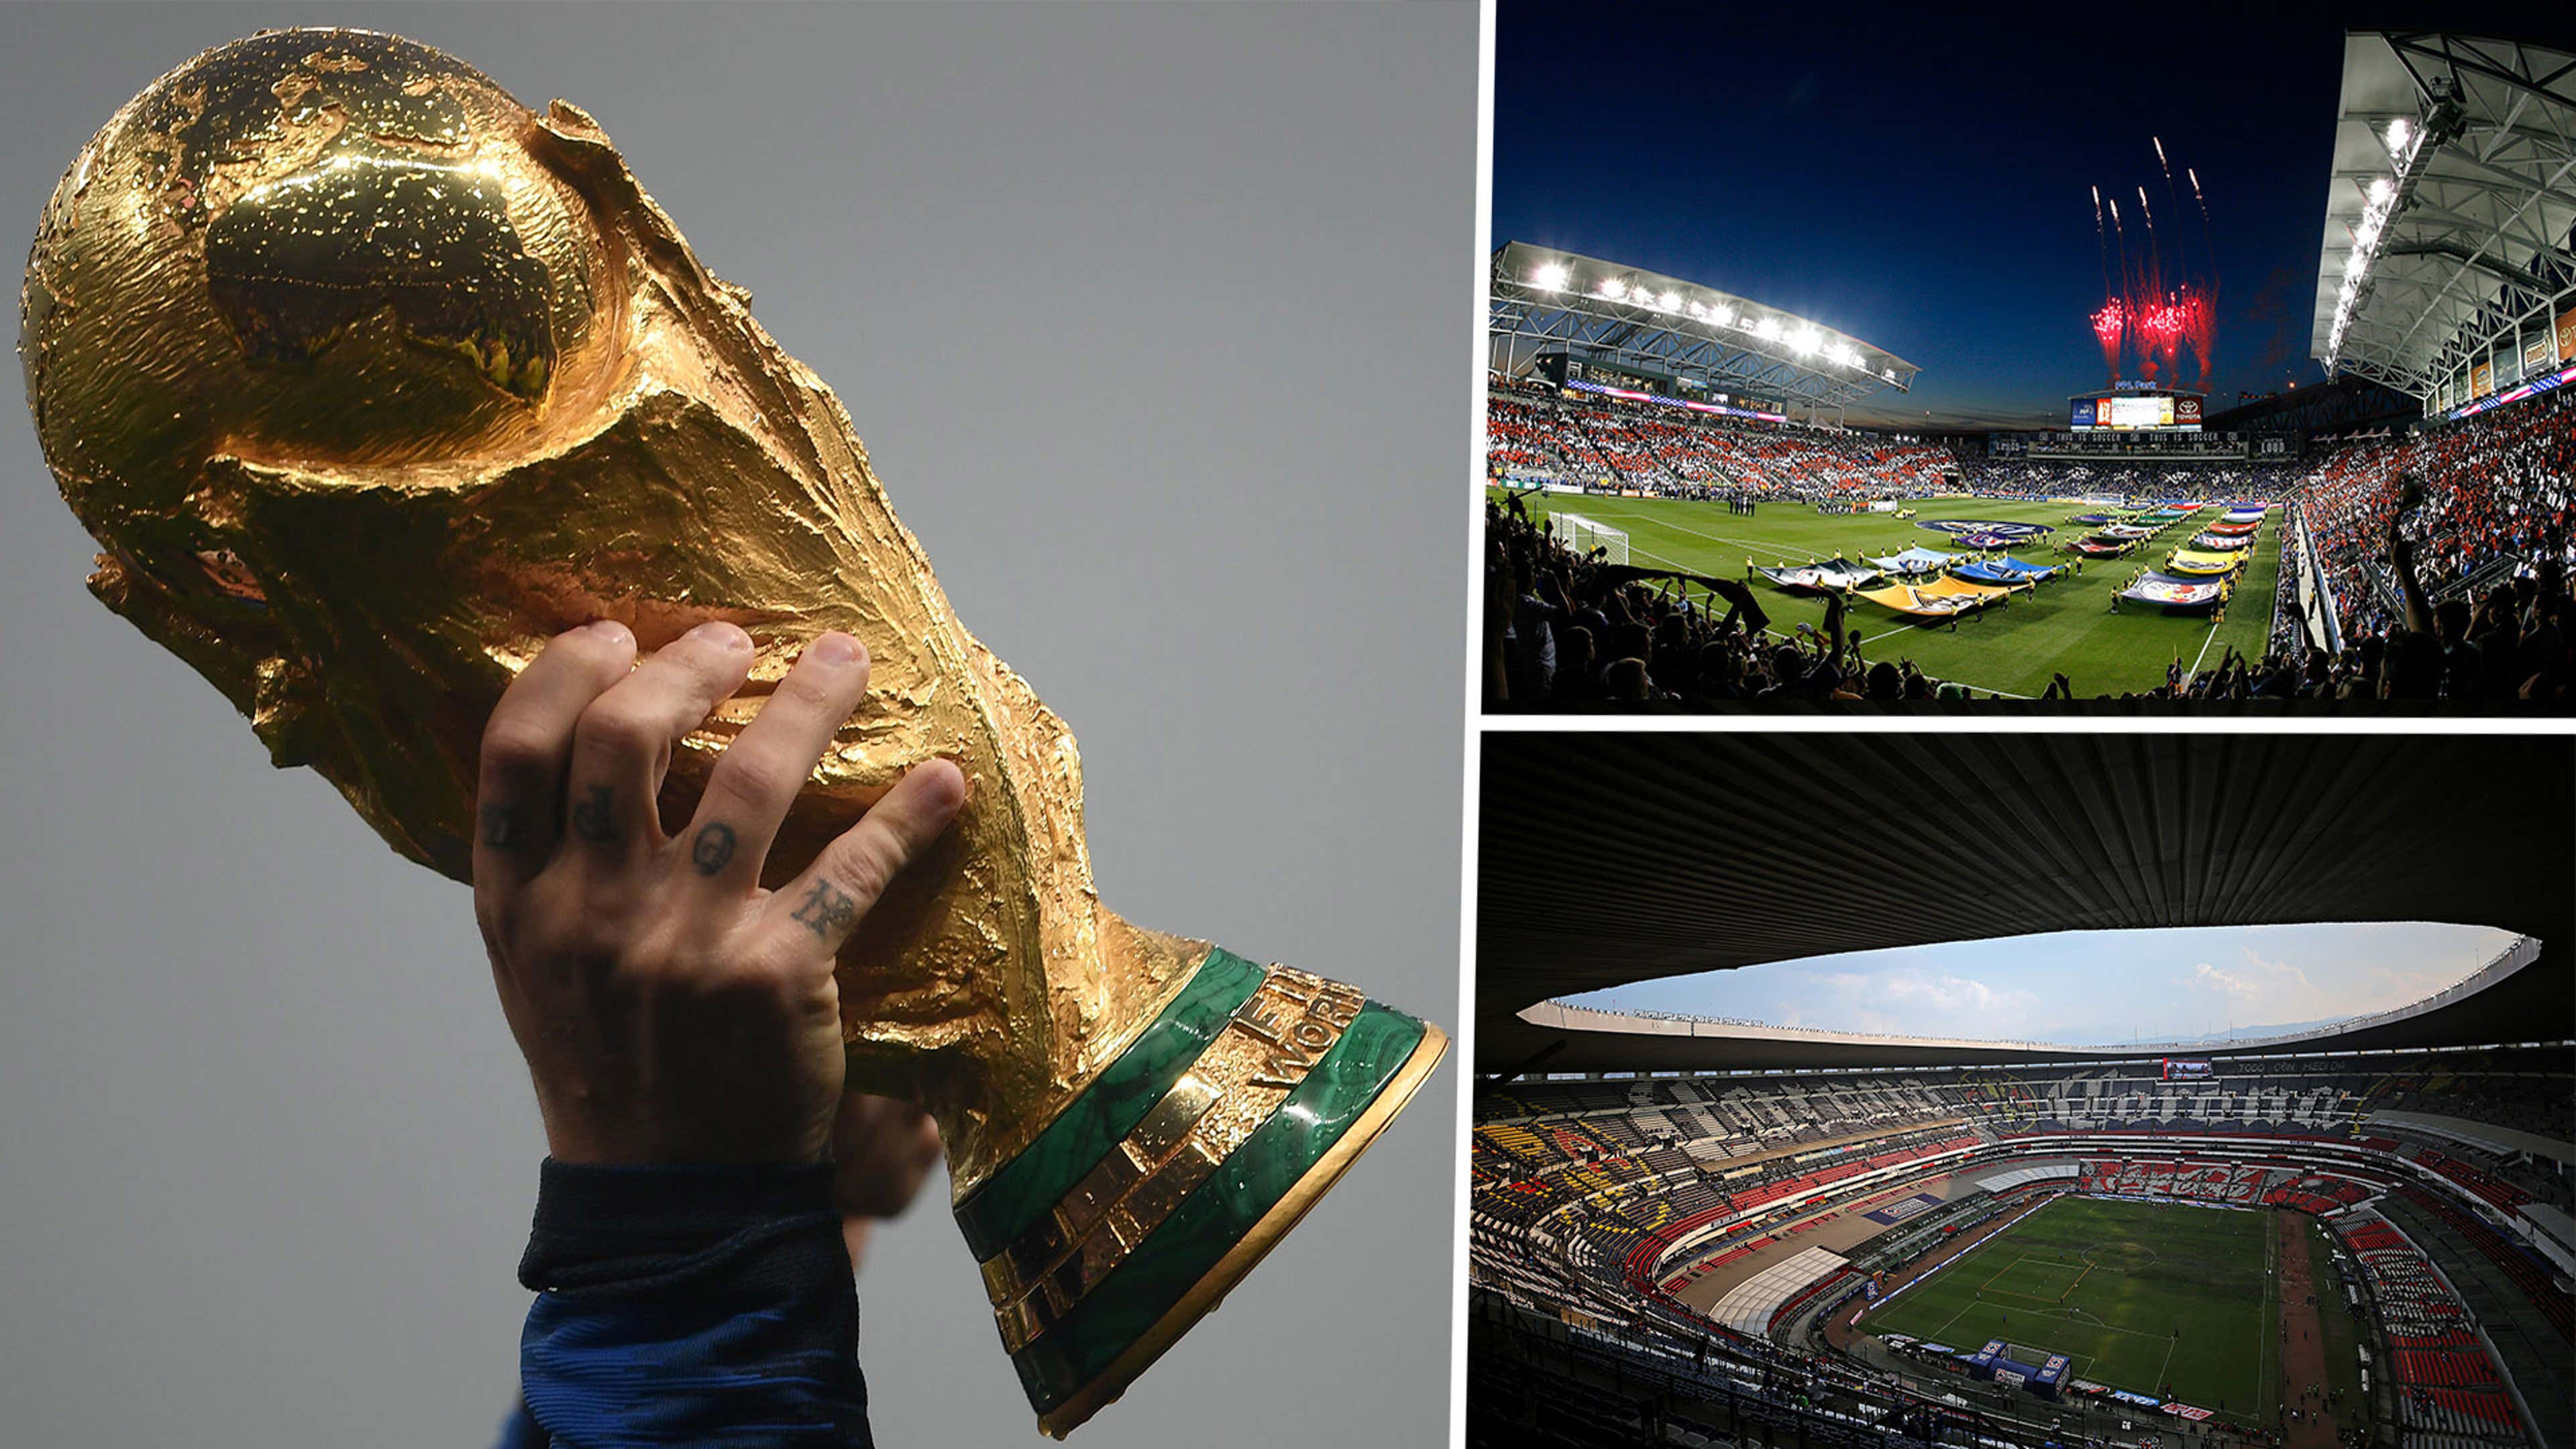 Copa do Mundo com 48 seleções: o que muda nas Eliminatórias?